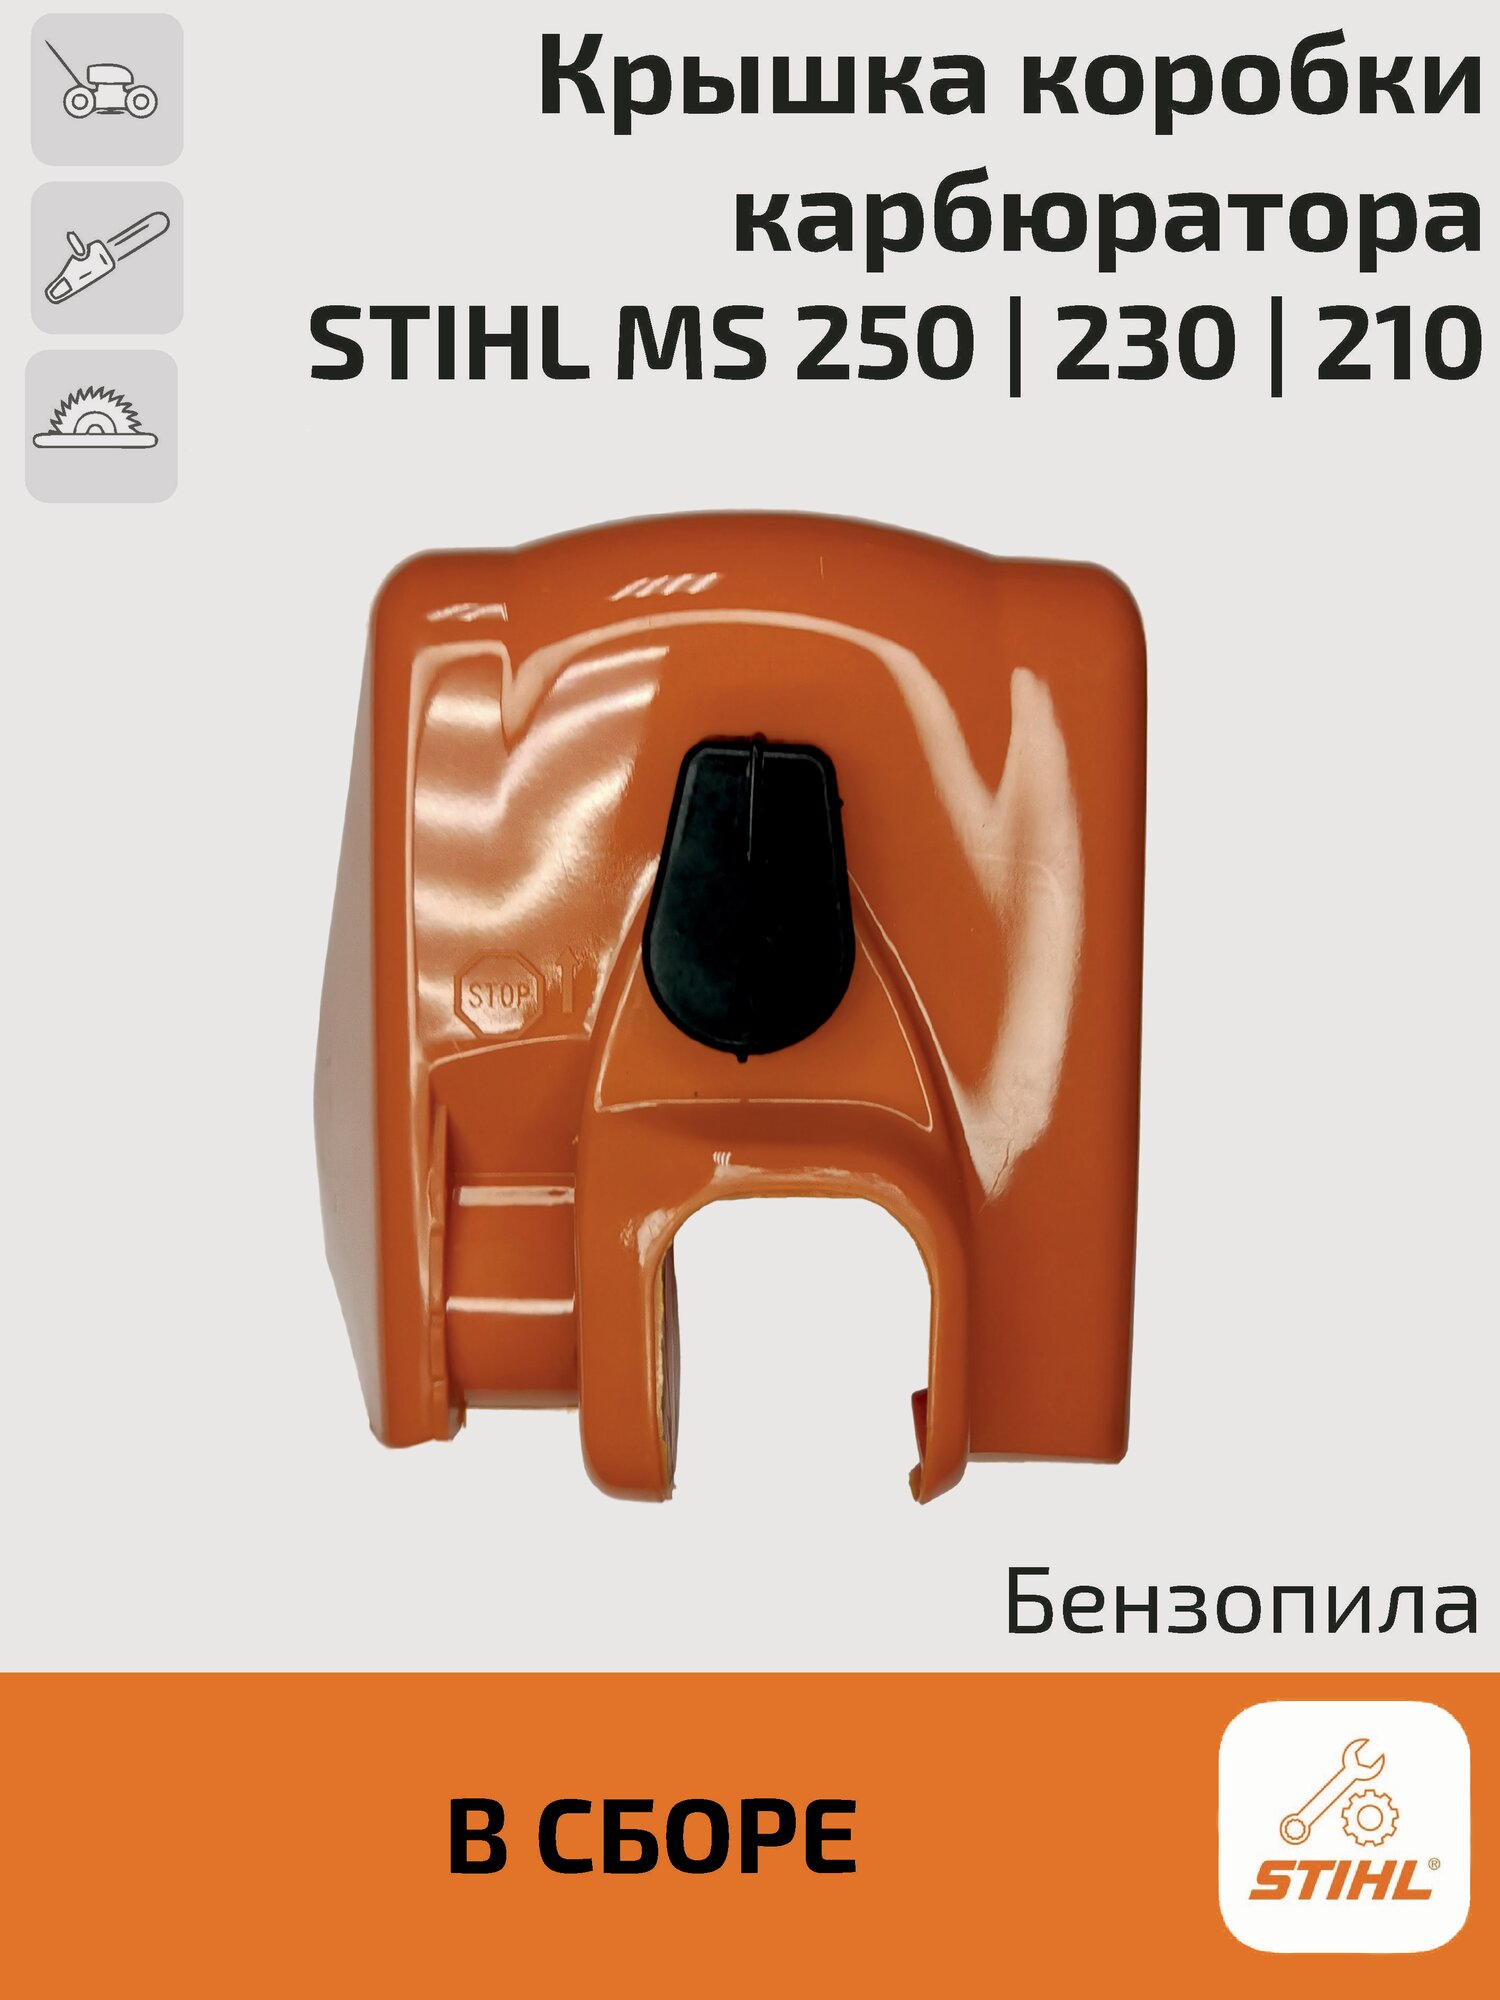 Крышка коробки карбюратора (воздушного фильтра) для бензопилы Stihl MS 250 230 210. Штиль.